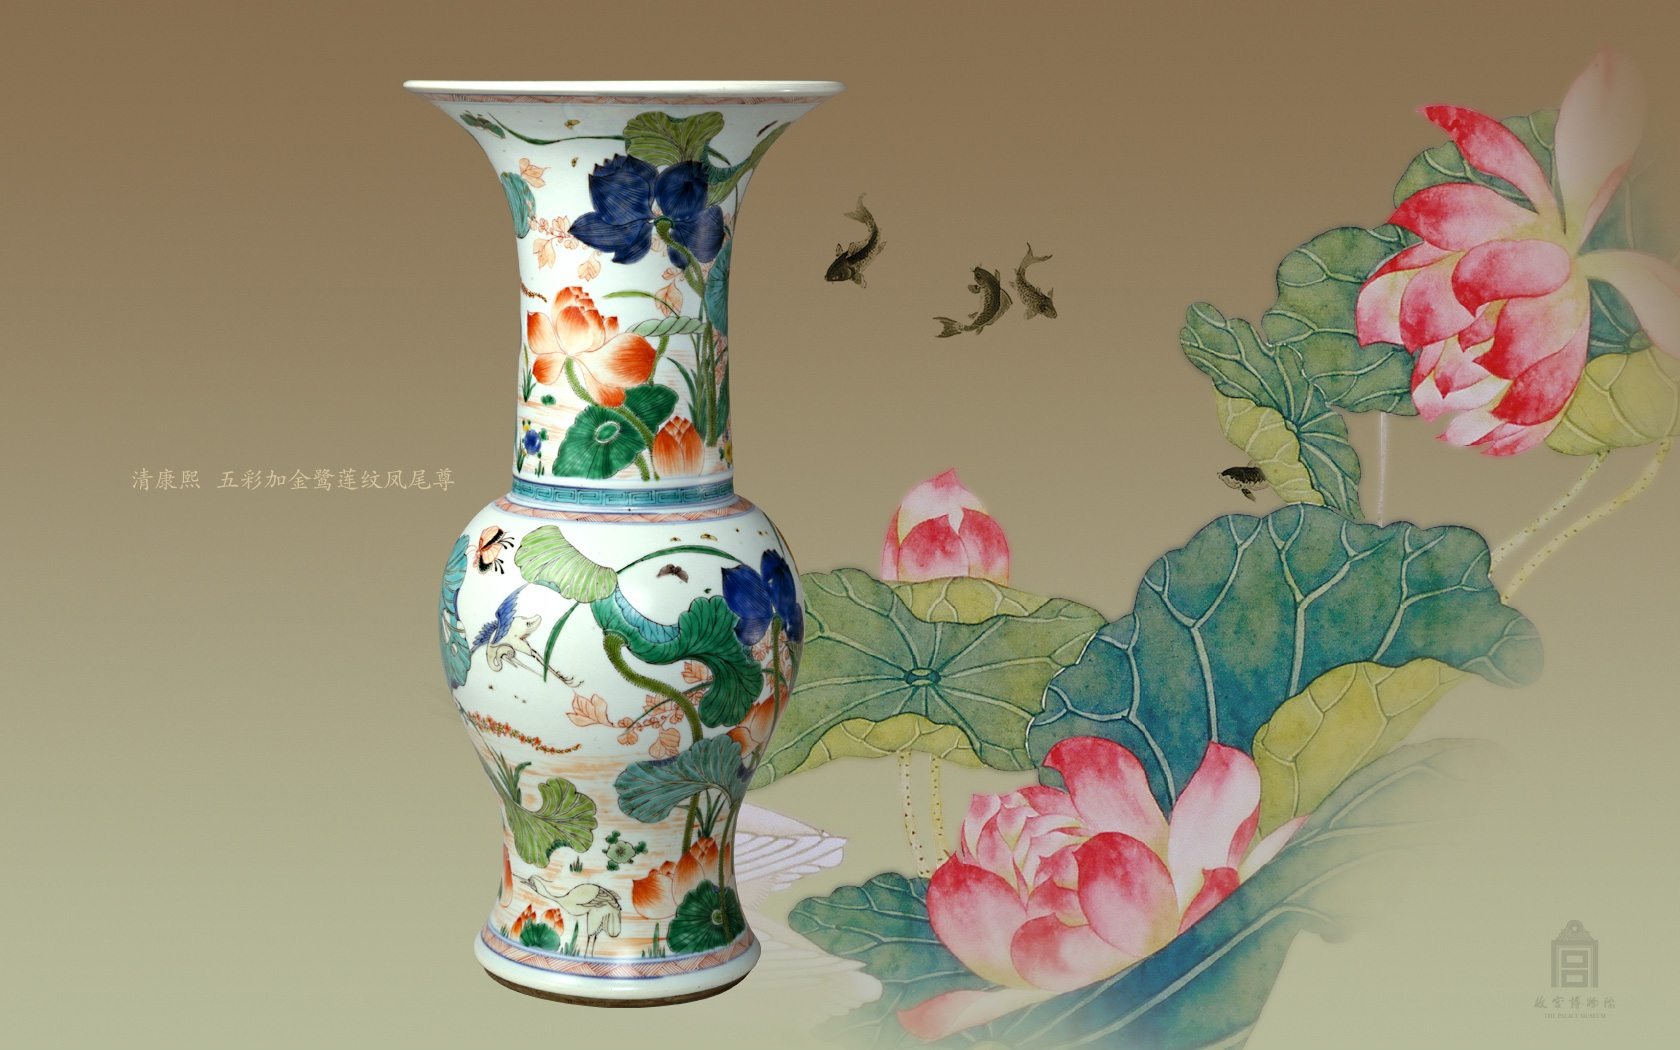 北京故宫博物院 文物展壁纸(二)5 - 1680x1050